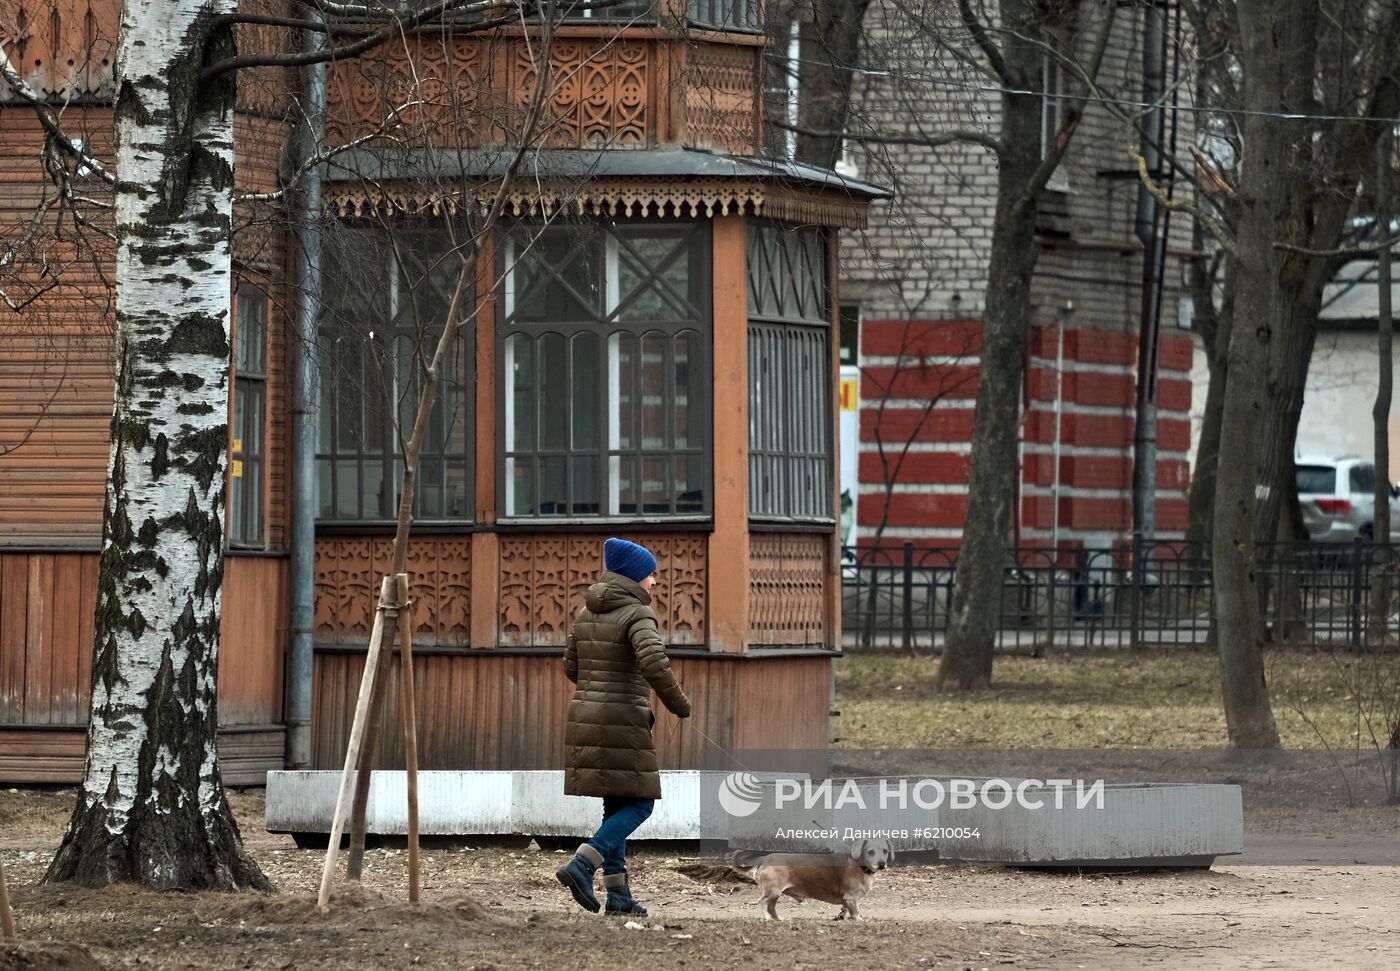 Ситуация в городах России в связи с коронавирусом